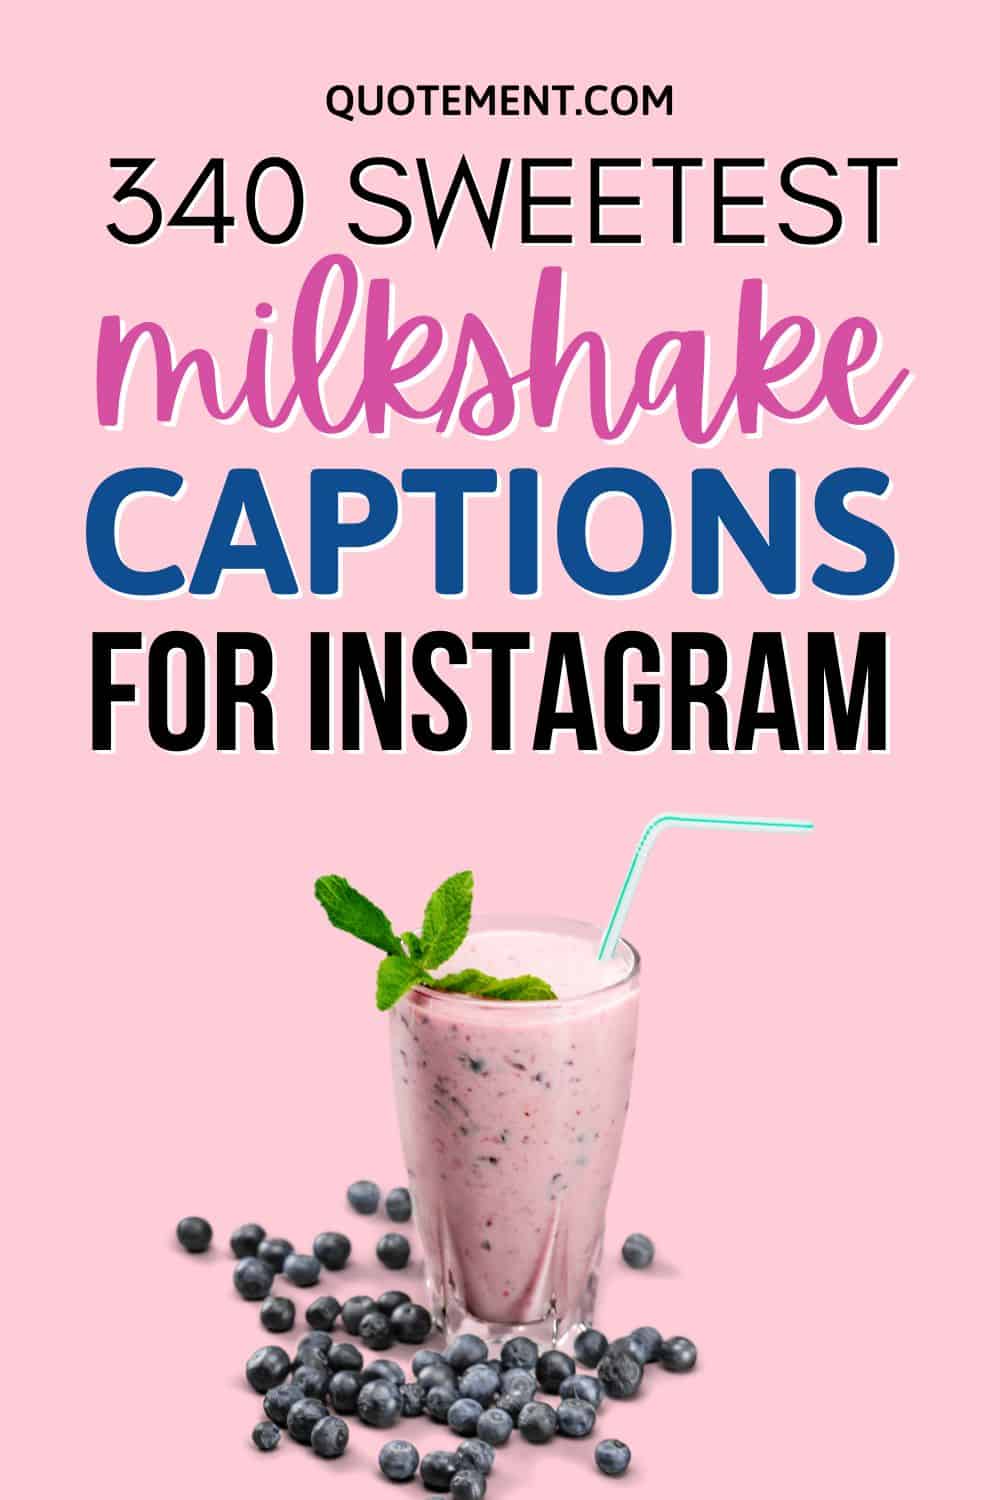 340 Best Milkshake Captions For Instagram Of All Time